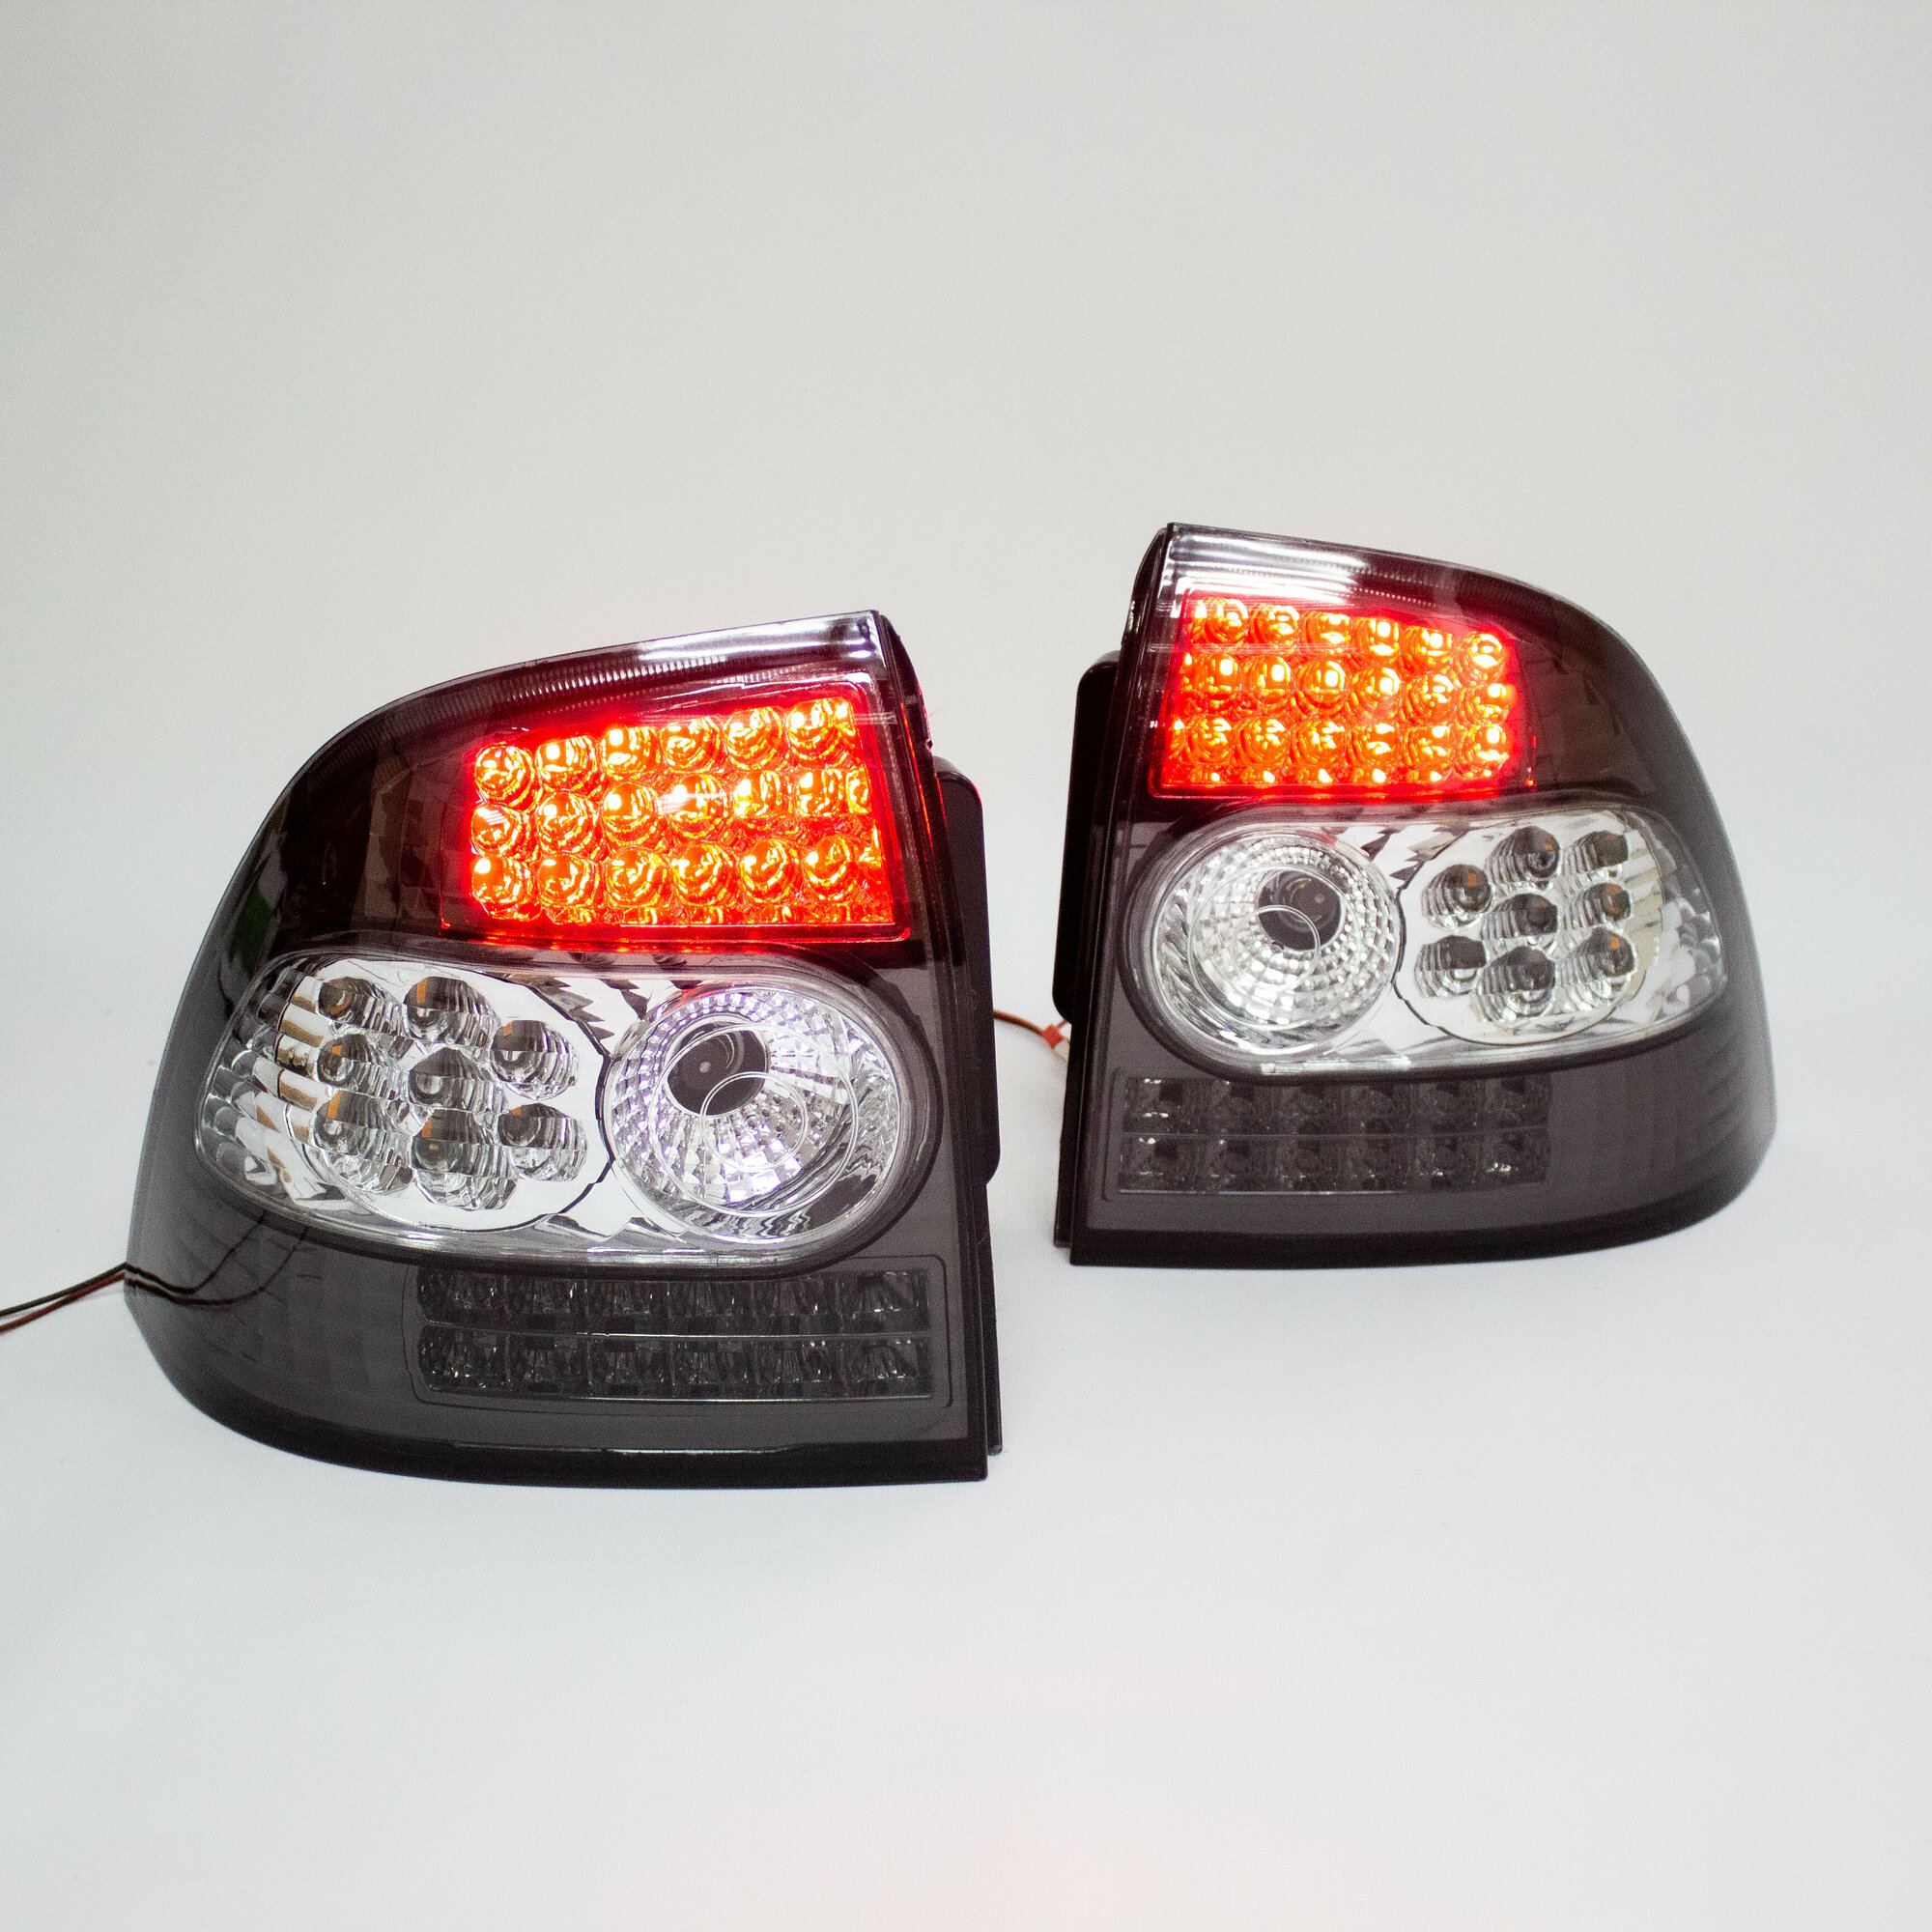 Задние фонари Приора диодные тюнинг комплект левый, правый фонарь 302-LED серо-белые